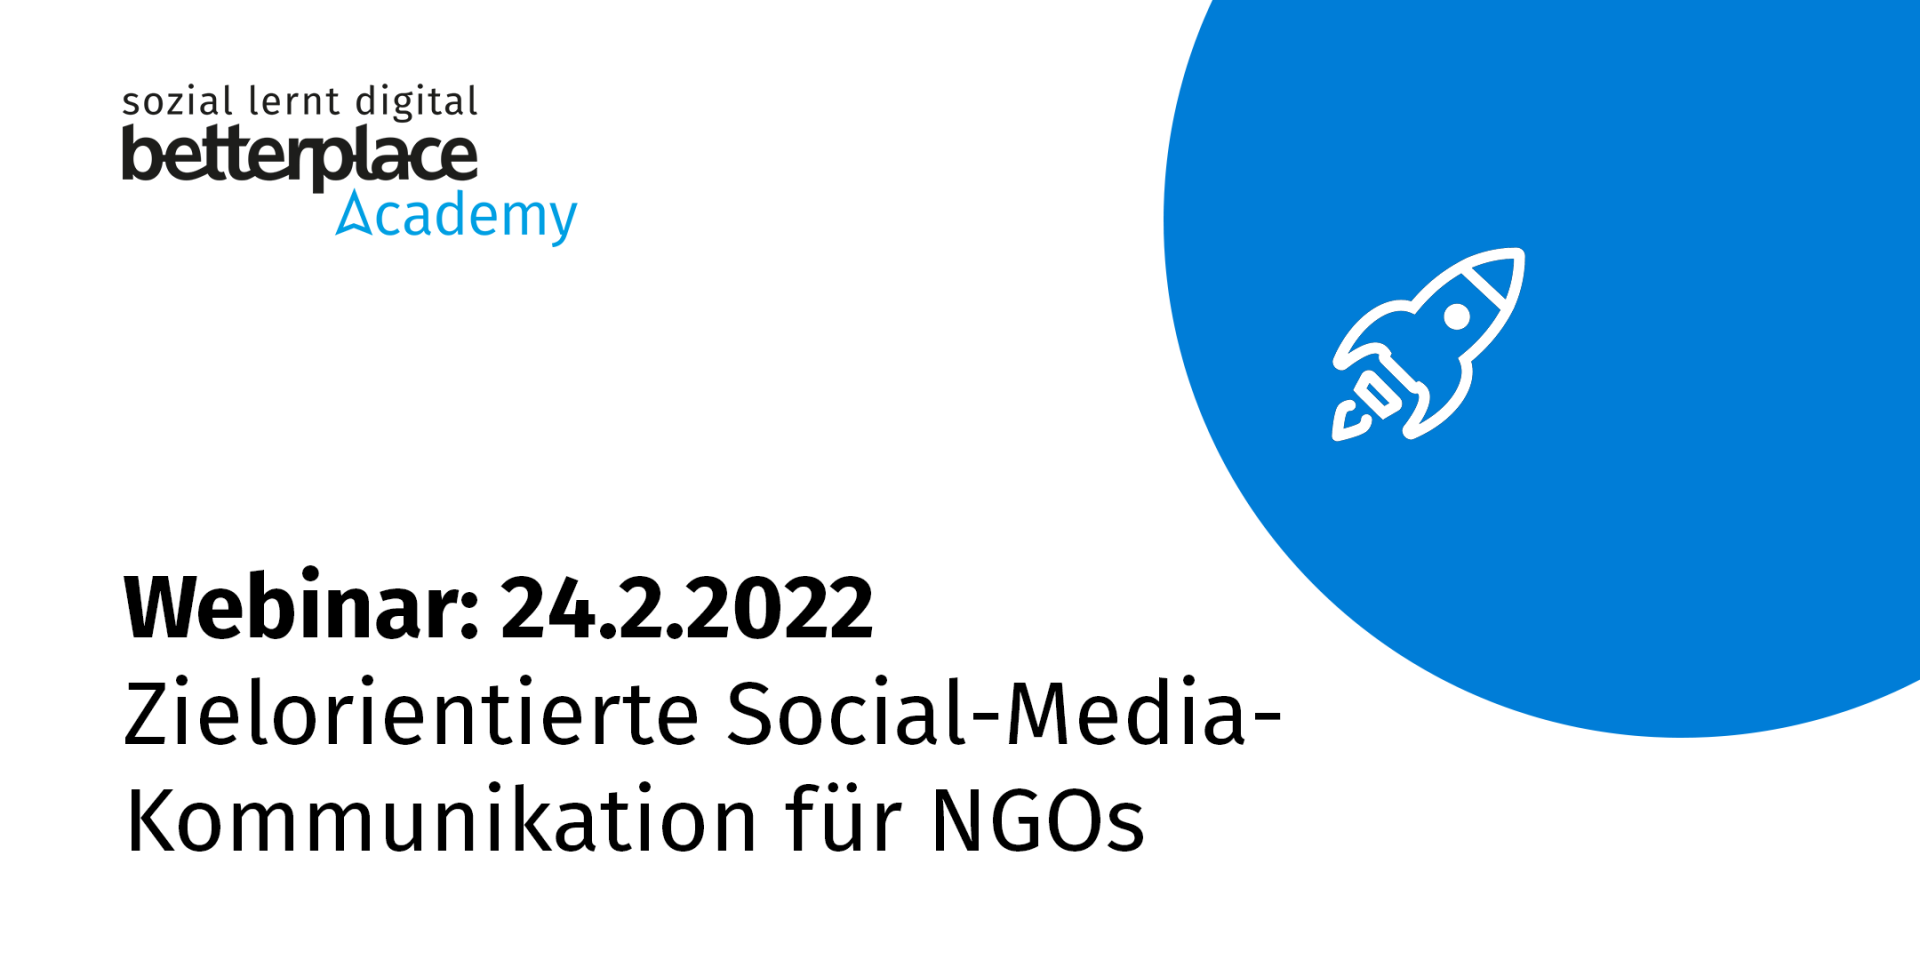 Blauer Planet und weiße Raket mit Logo der betterplace academy sowie Text: Webinar am 24.2.2022: Zielorientierte Kommunikation auf Social Media